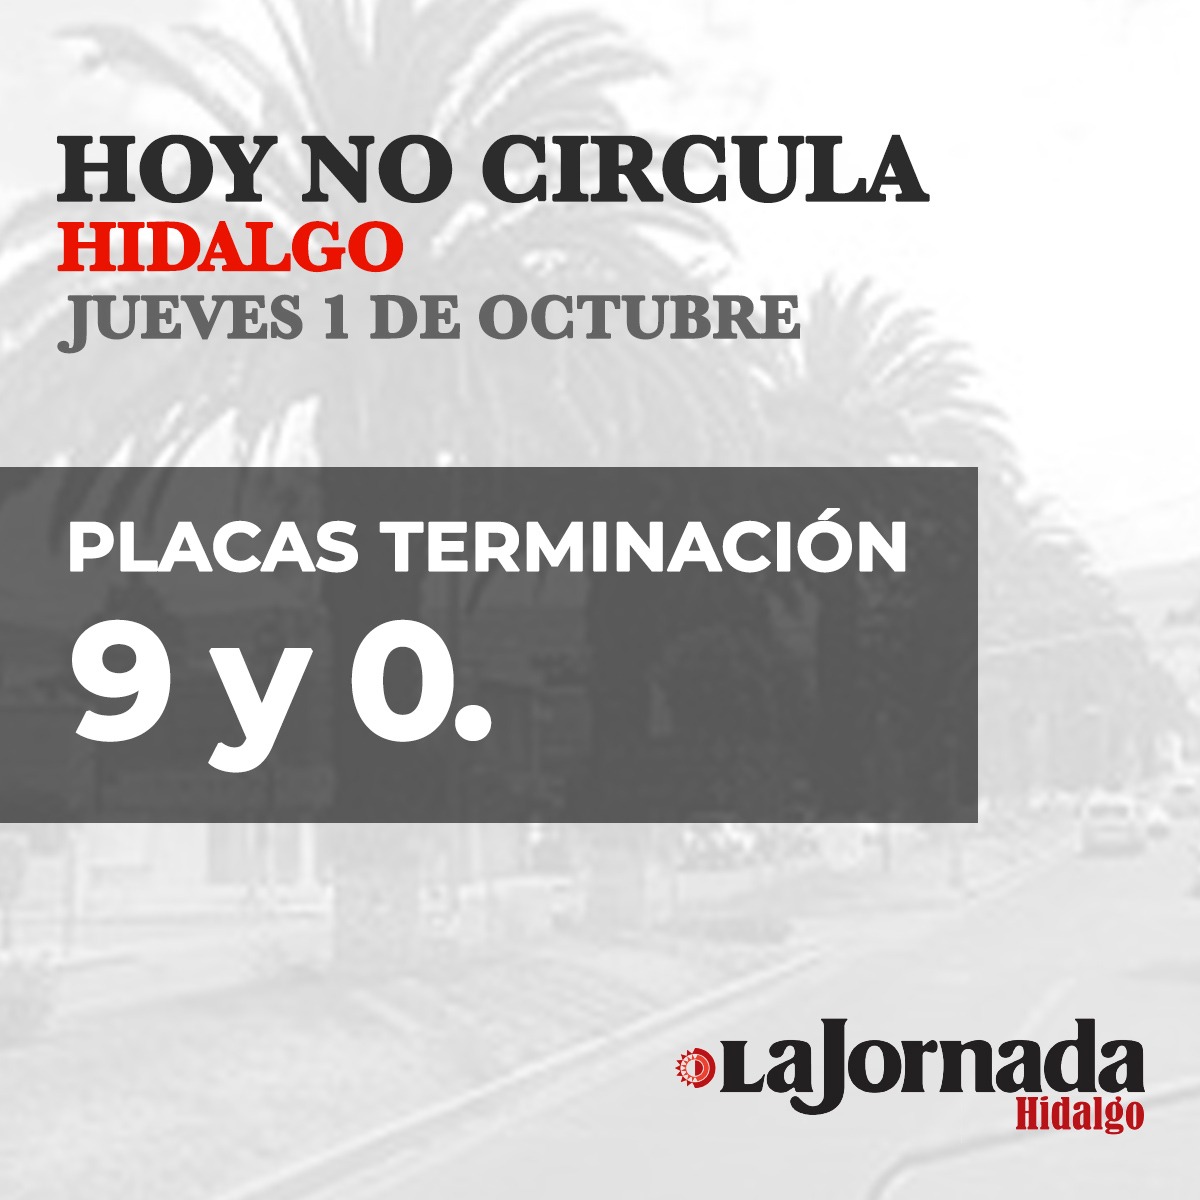 Hoy No Circula Hidalgo viernes 02 de octubre 2020